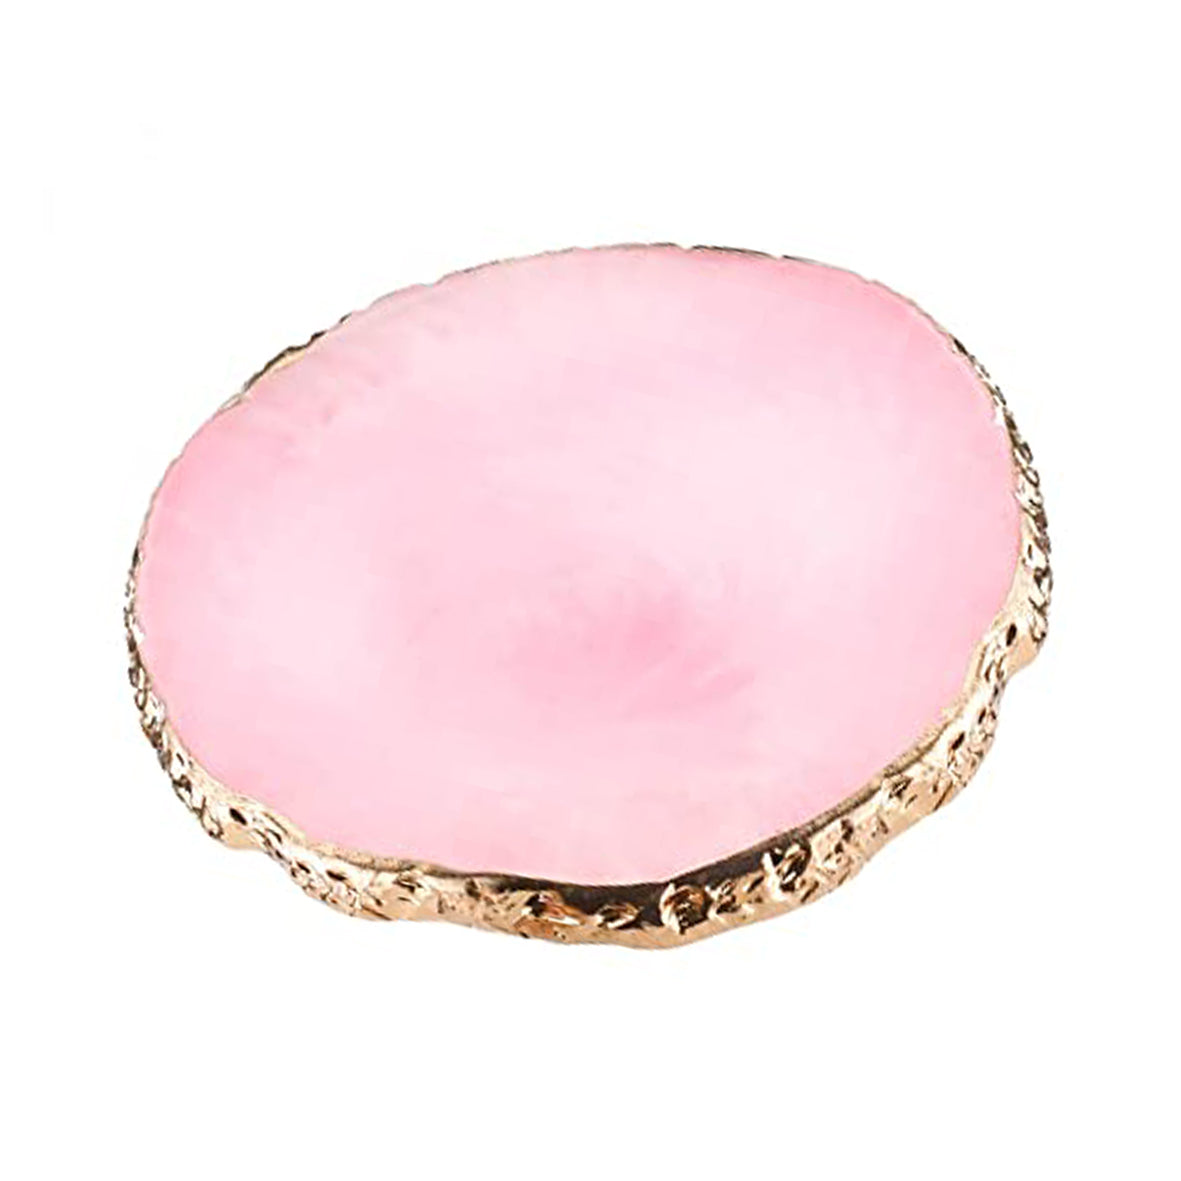 Nail Art Palette - Oval Pink - Roze